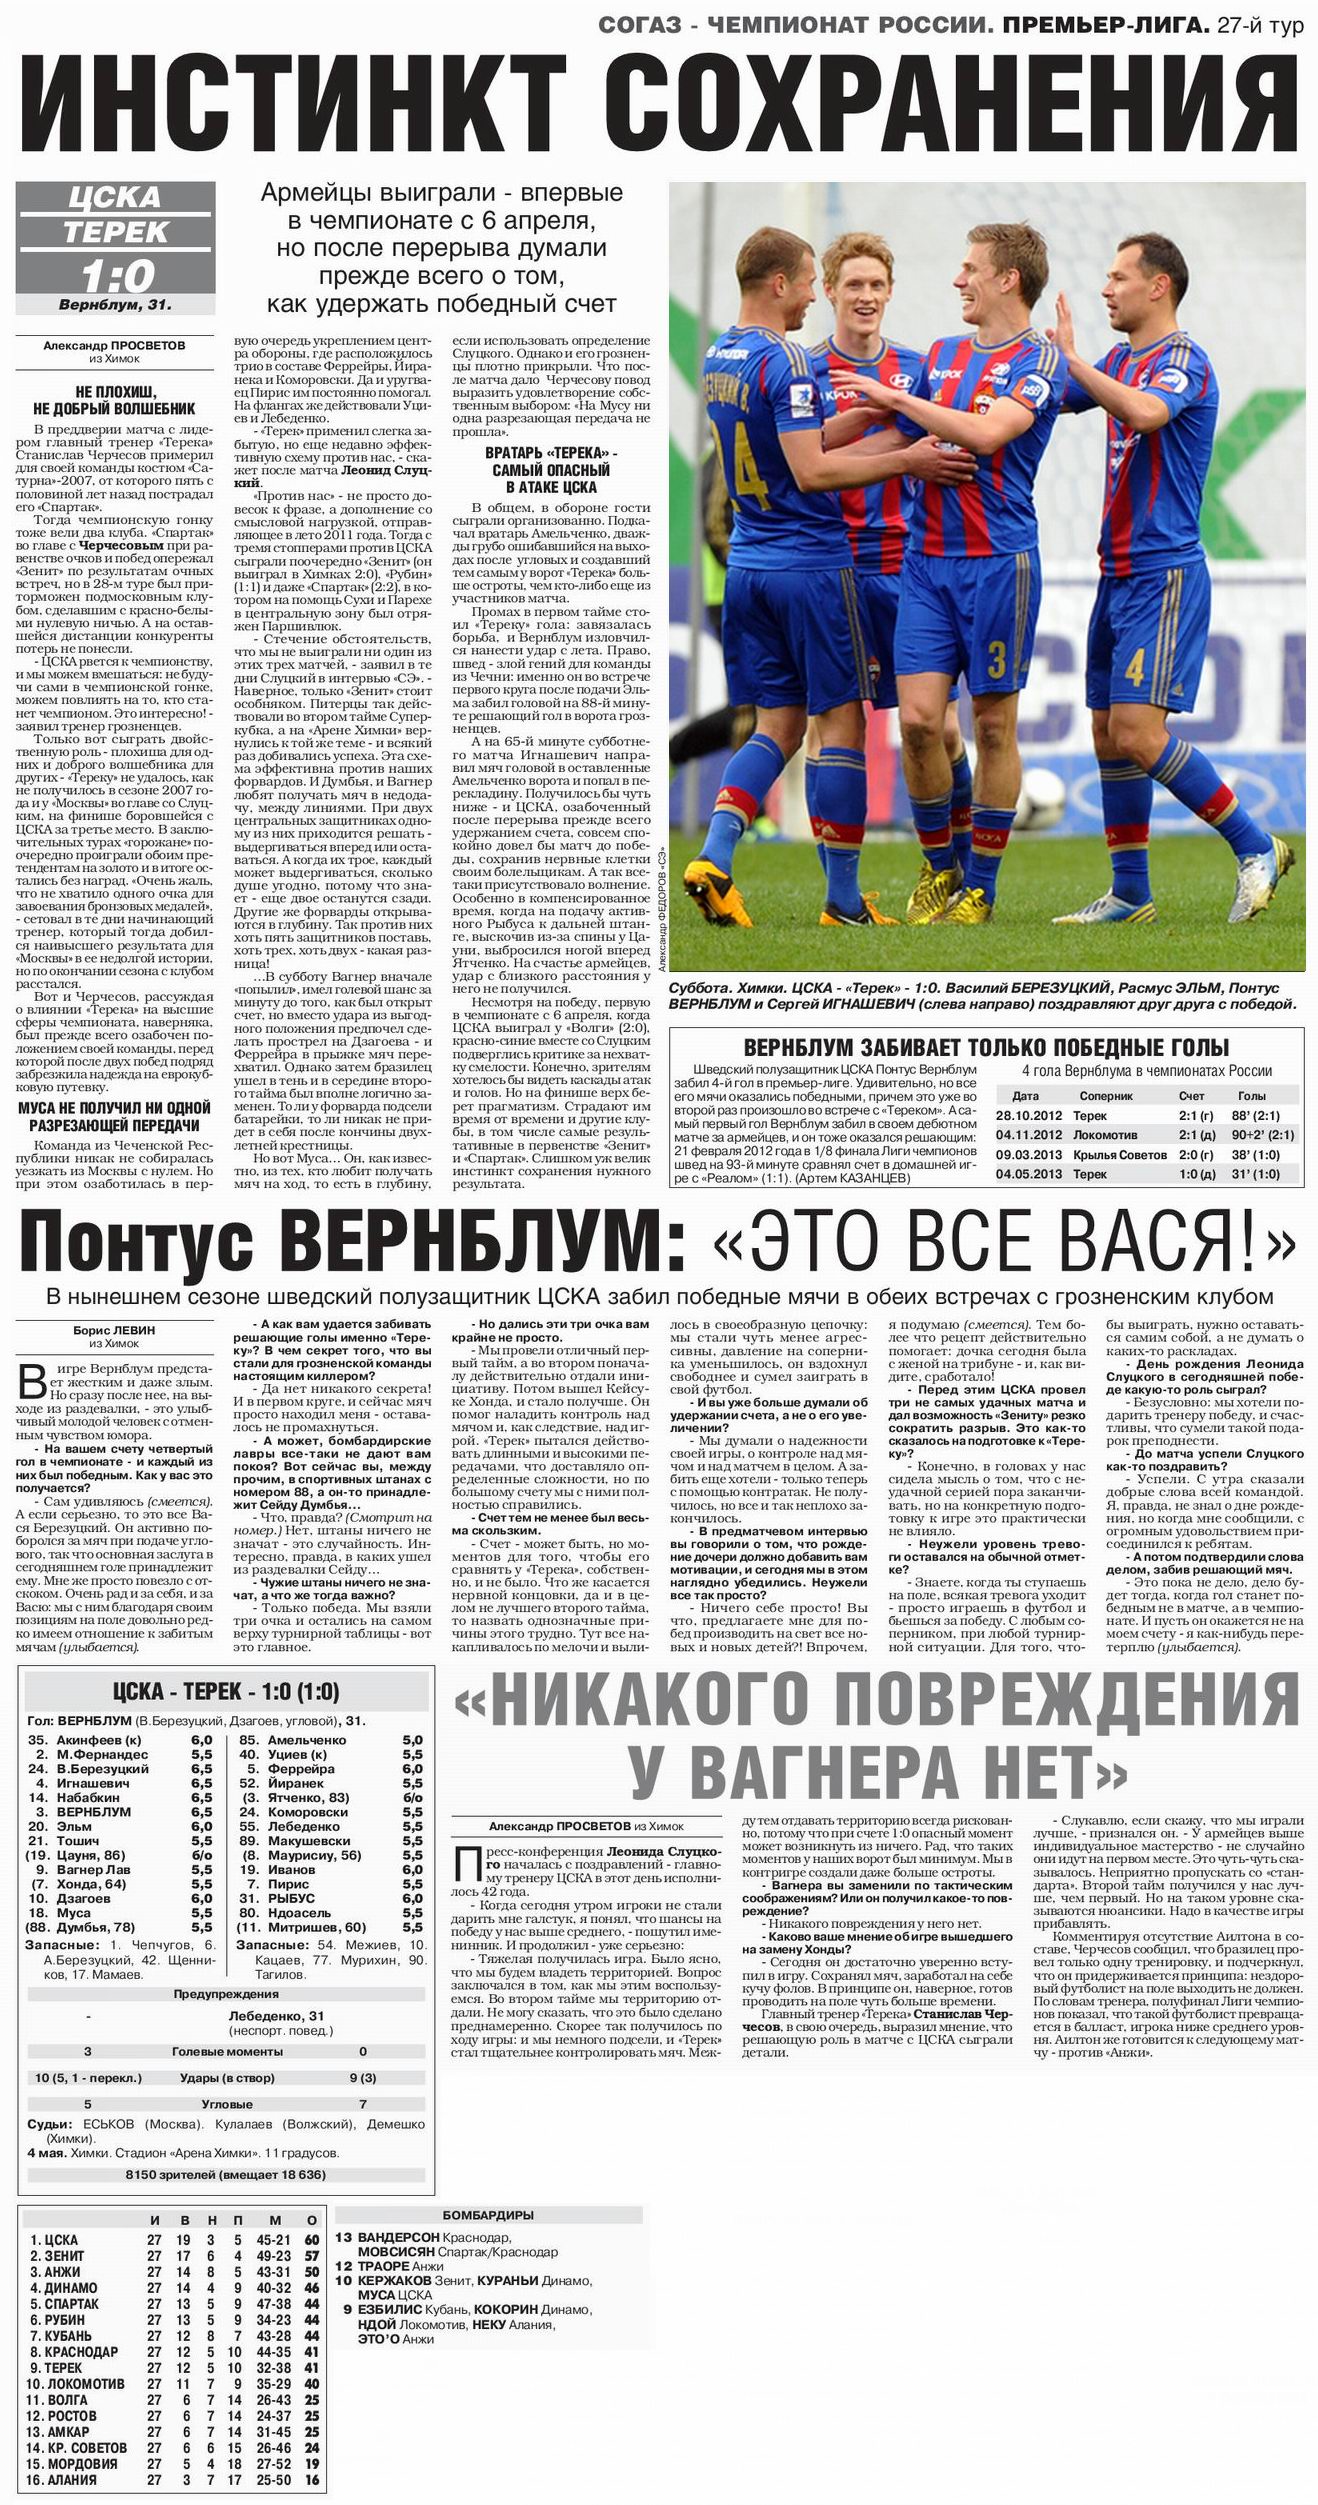 2013-05-04.CSKA-Terek